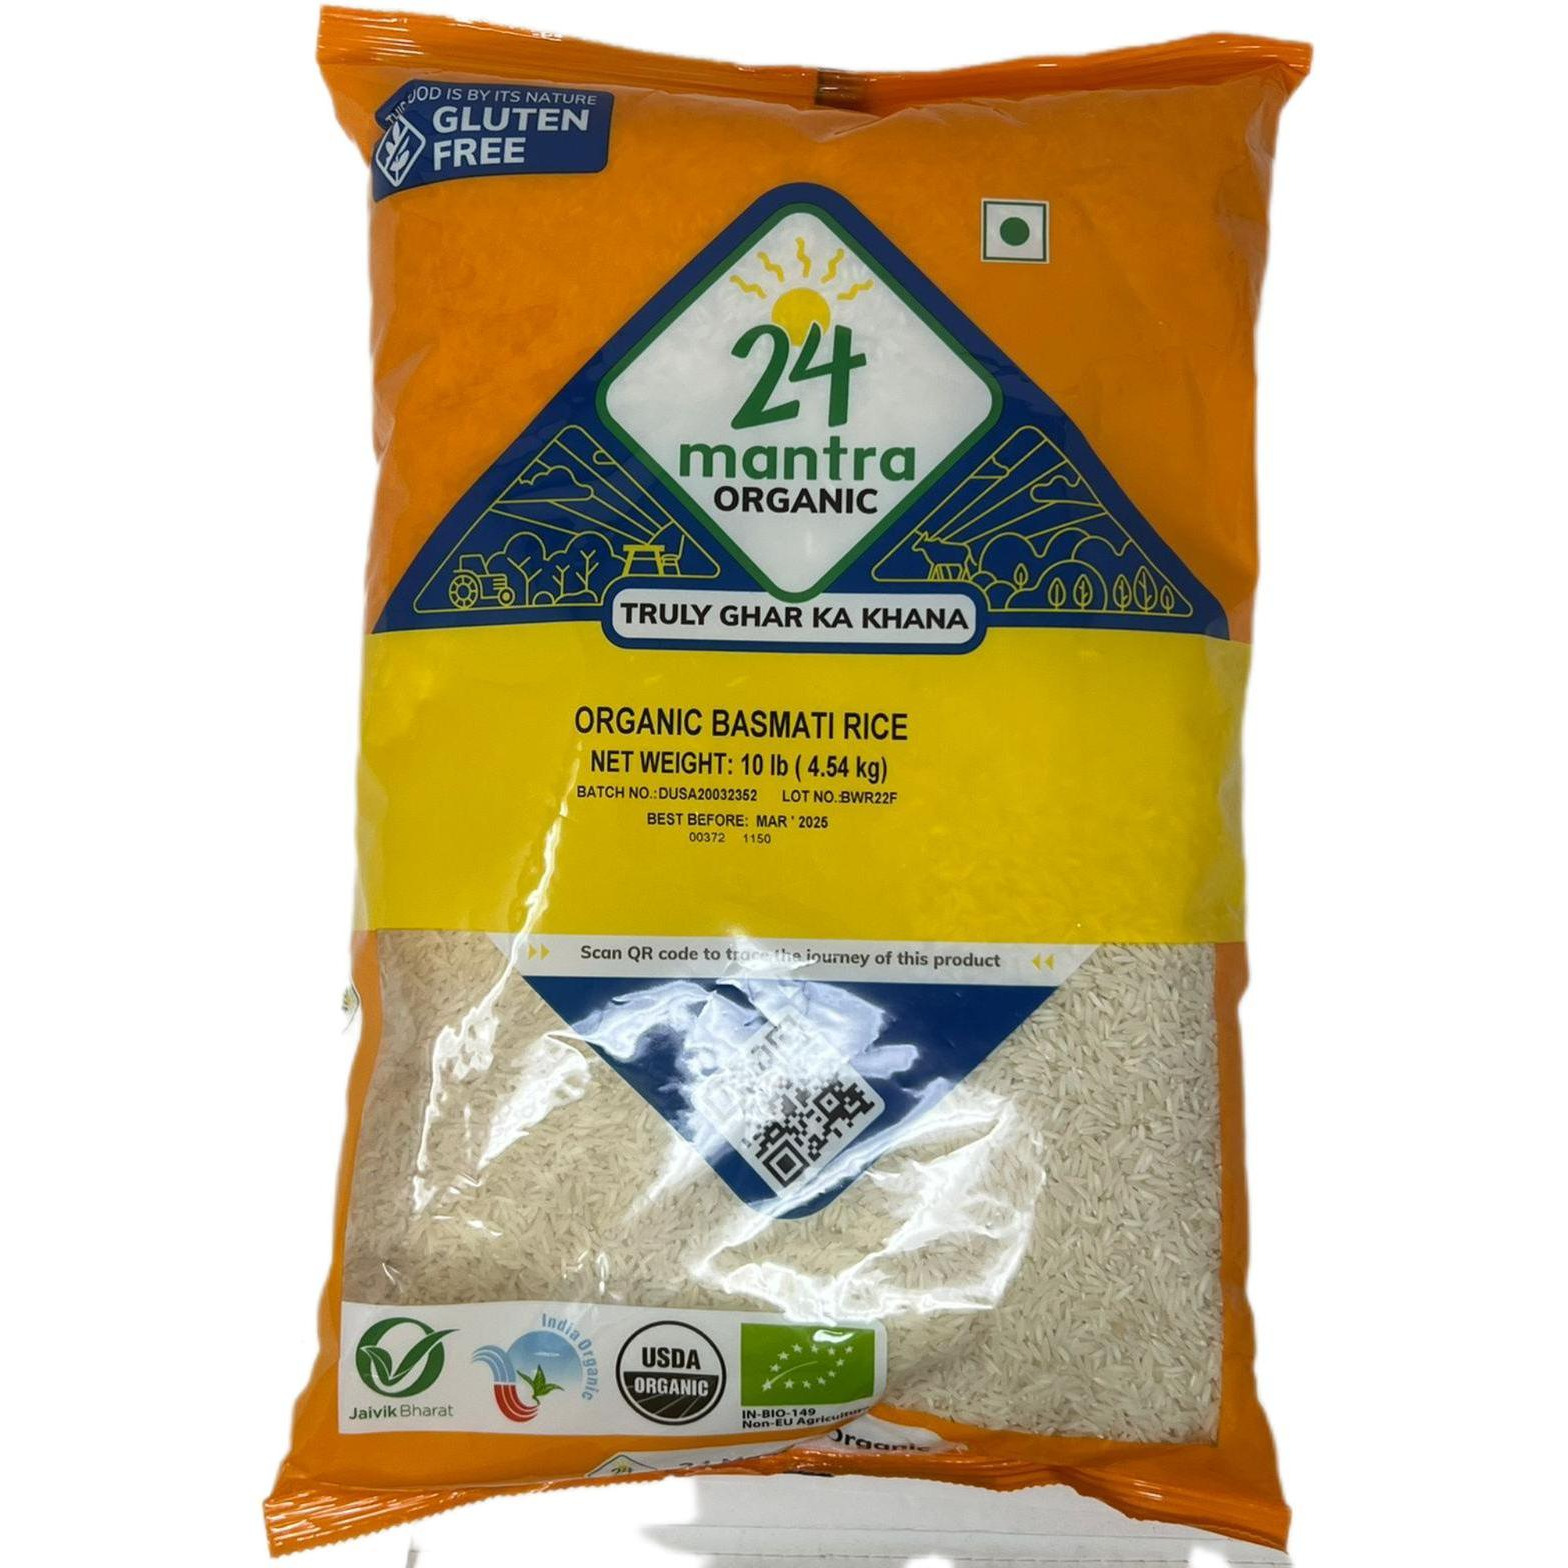 Case of 4 - 24 Mantra Organic Basmati White Rice - 10 Lb (4.5 Kg)